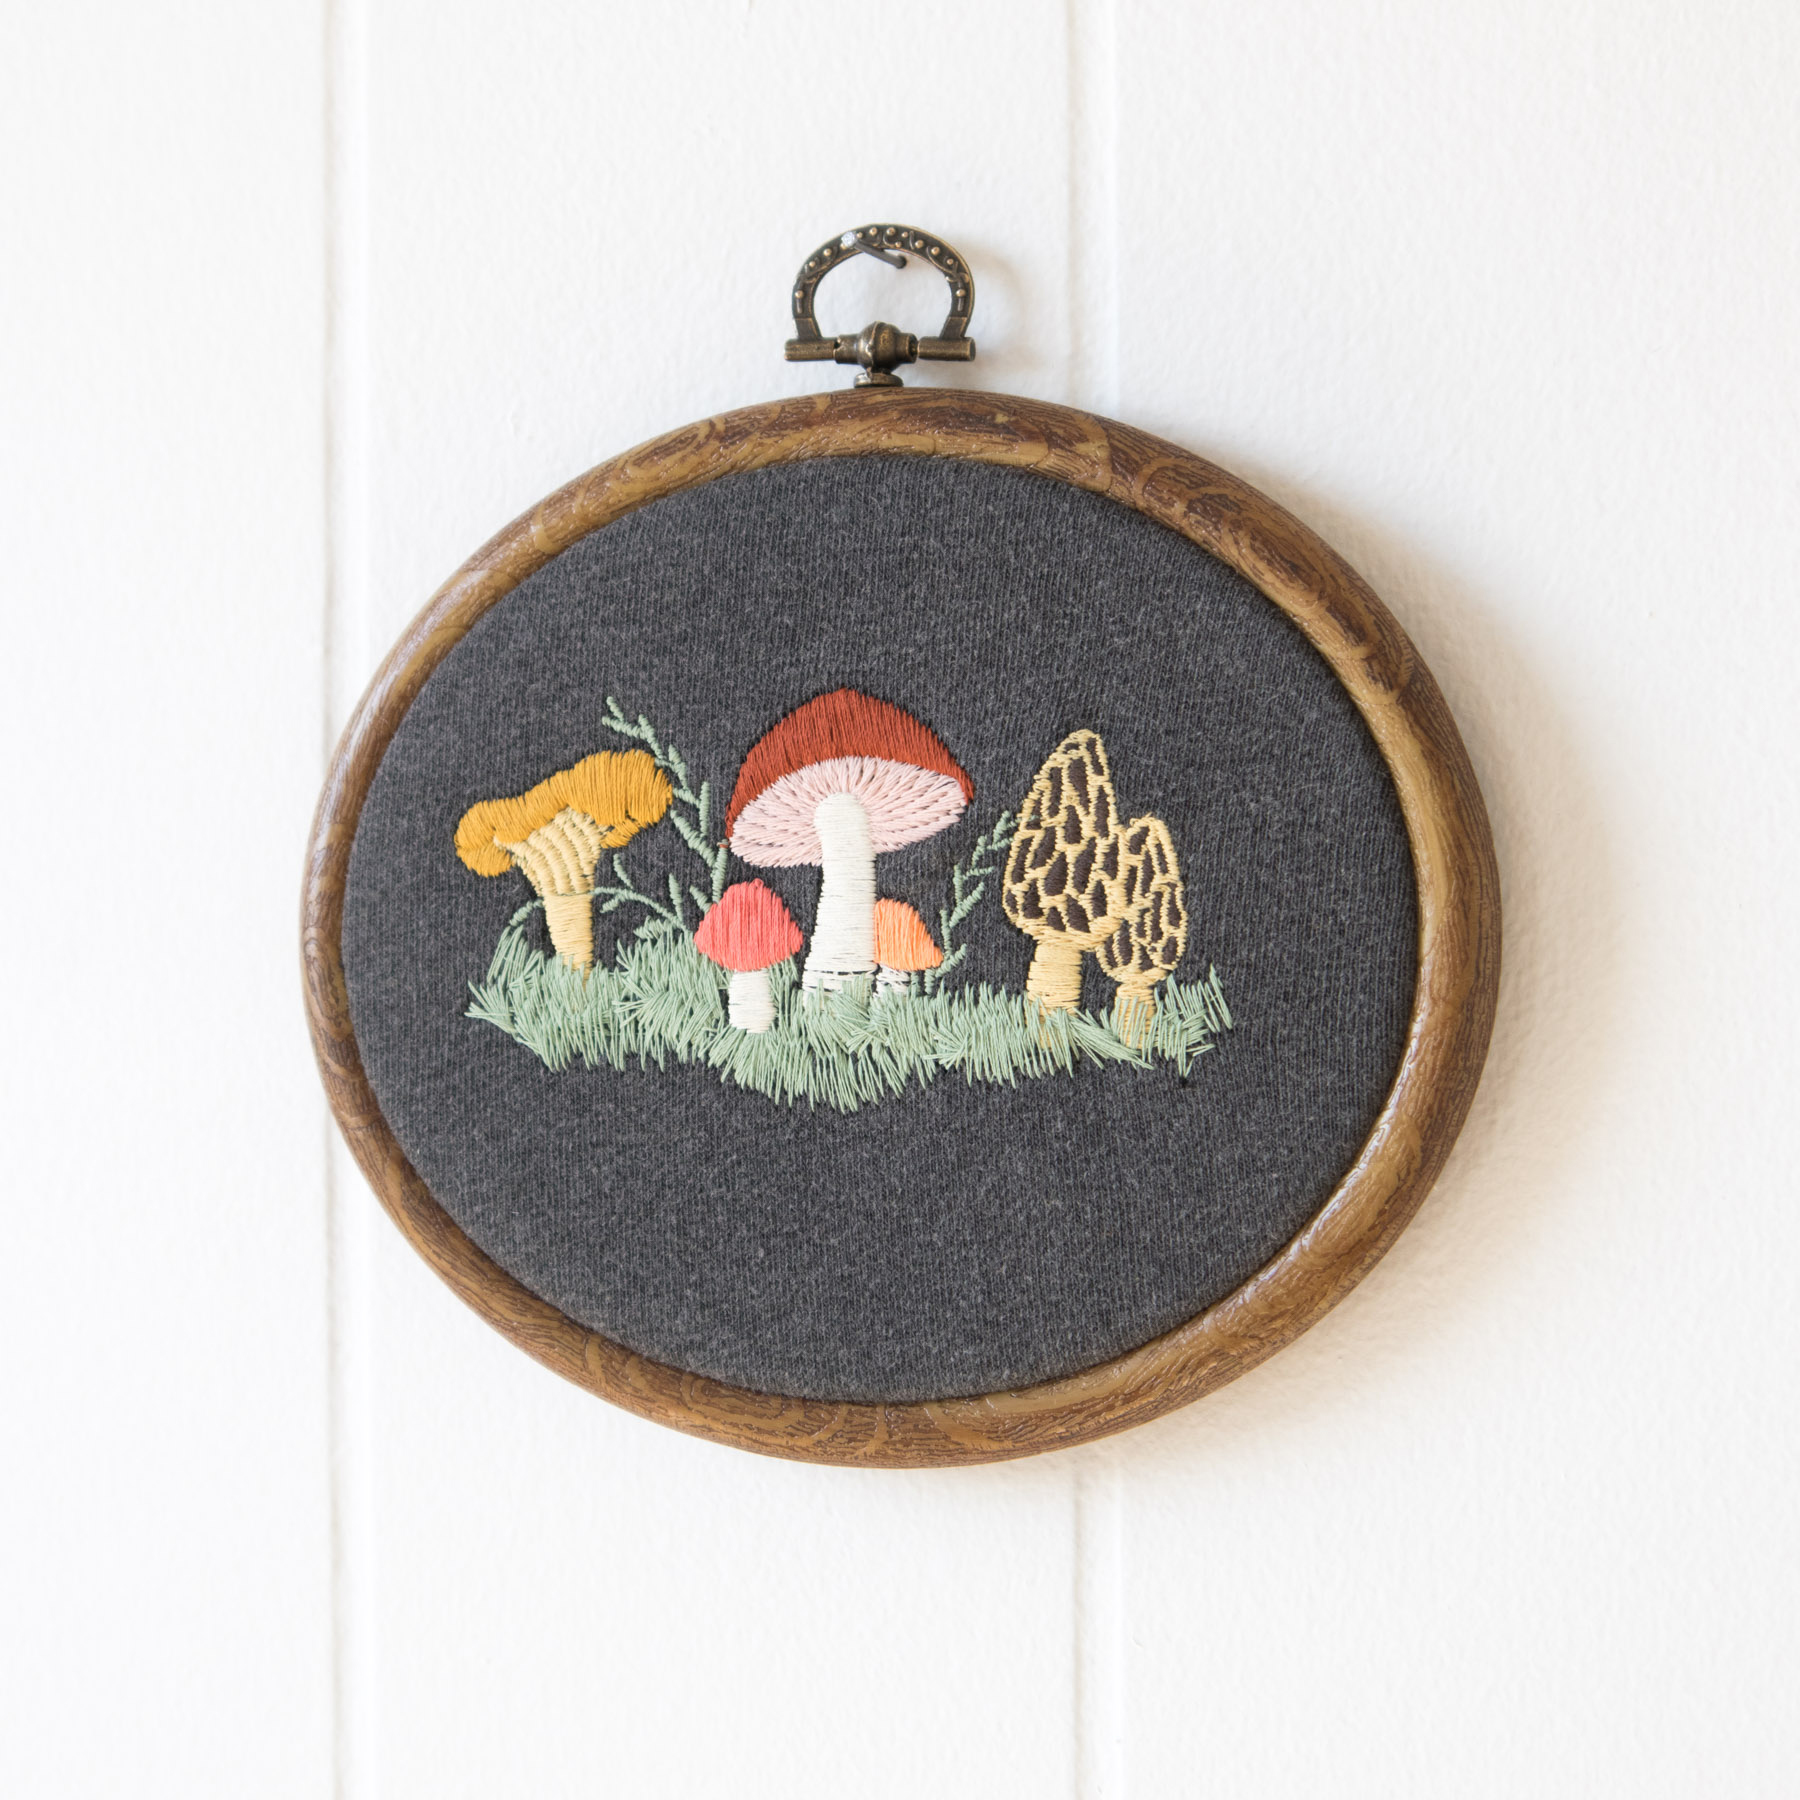 Mushroom Embroidery Hoop - Crewel and Unusual